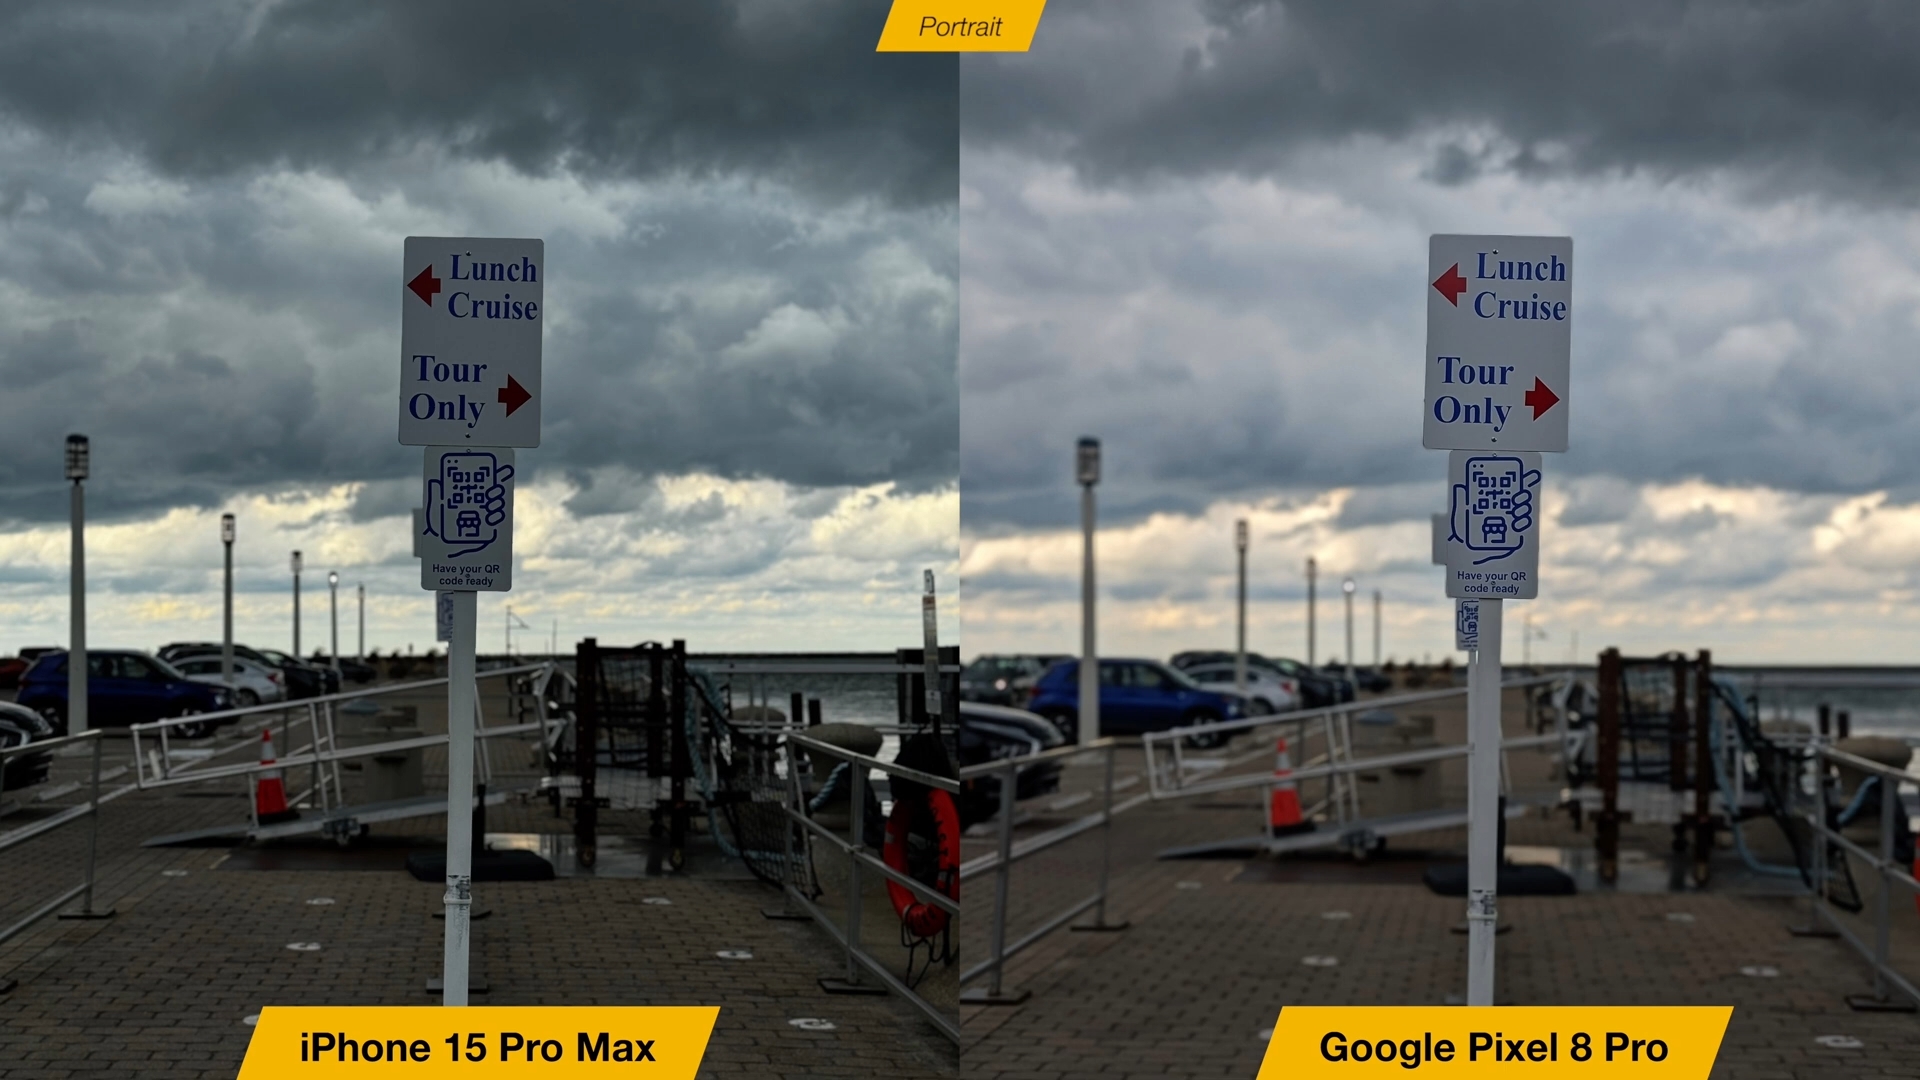 Van iPhoneIslam.com, vergelijking tussen de Google Pixel 8 Pro en de iPhone 15 Pro Max